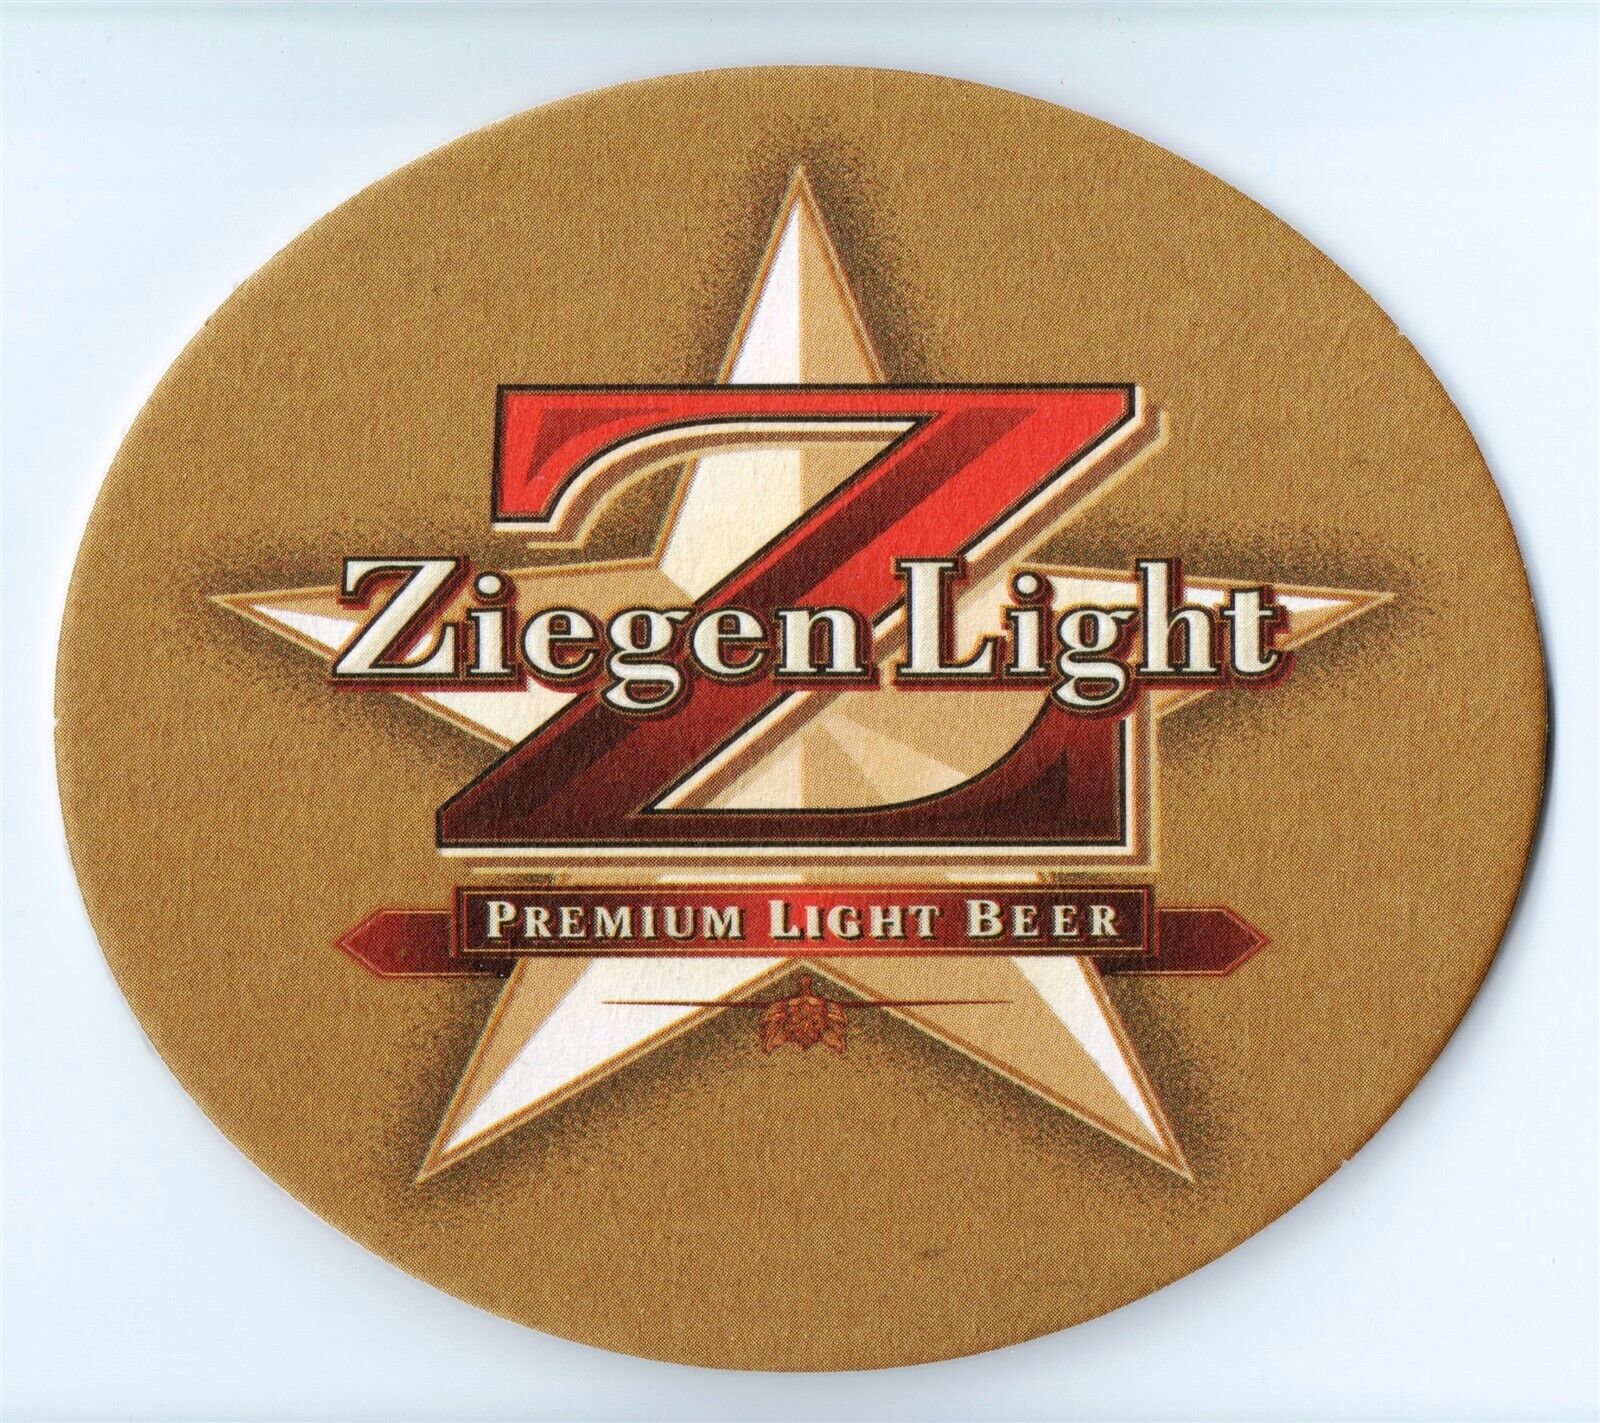 Ziegen Light Premium Light Beer Coaster-OV15